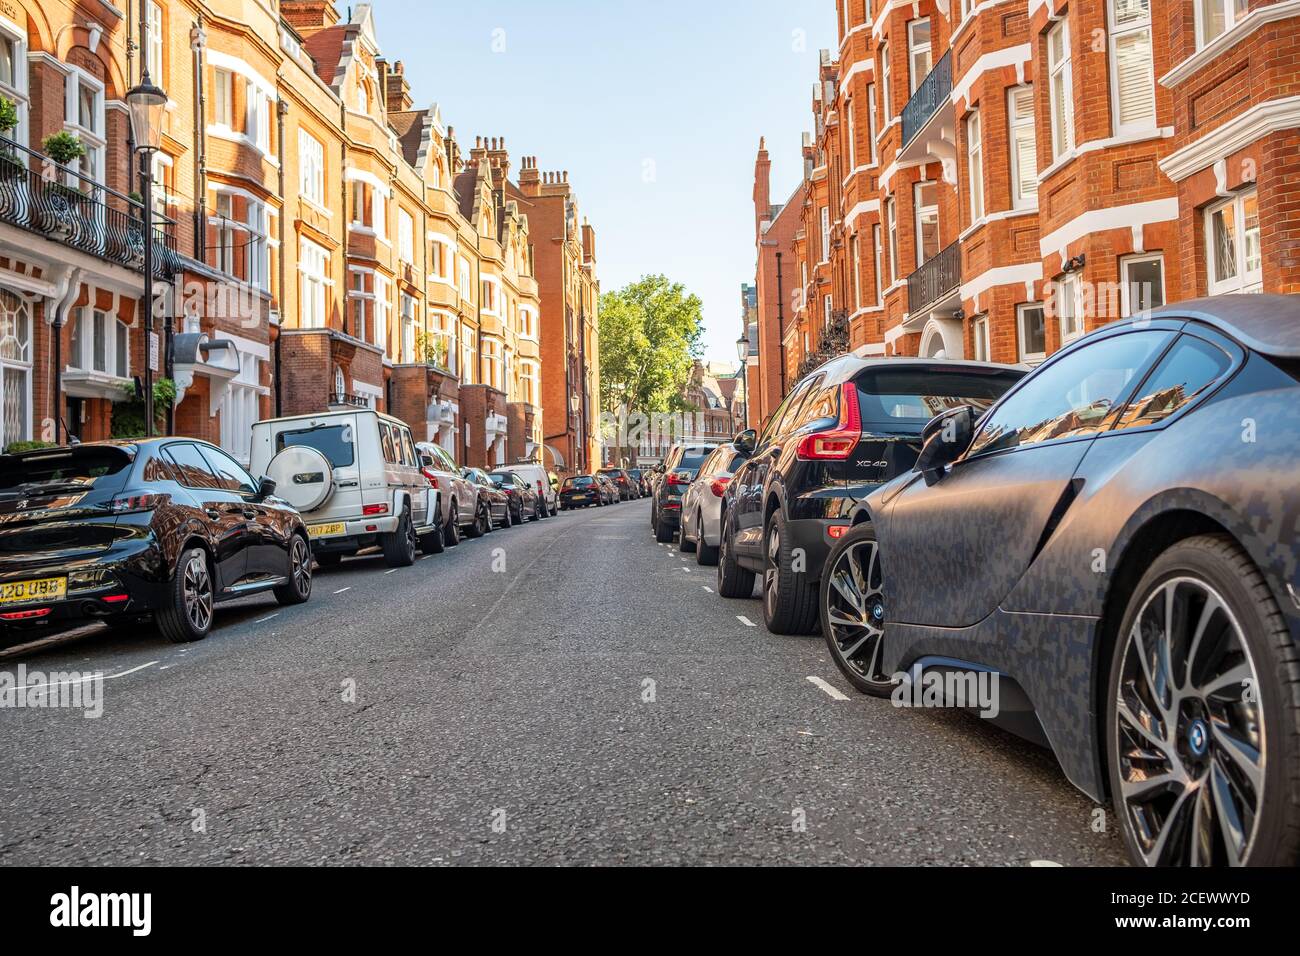 Londra- Via di attraenti case a schiera in mattoni rossi a Chelsea con auto parcheggiate Foto Stock